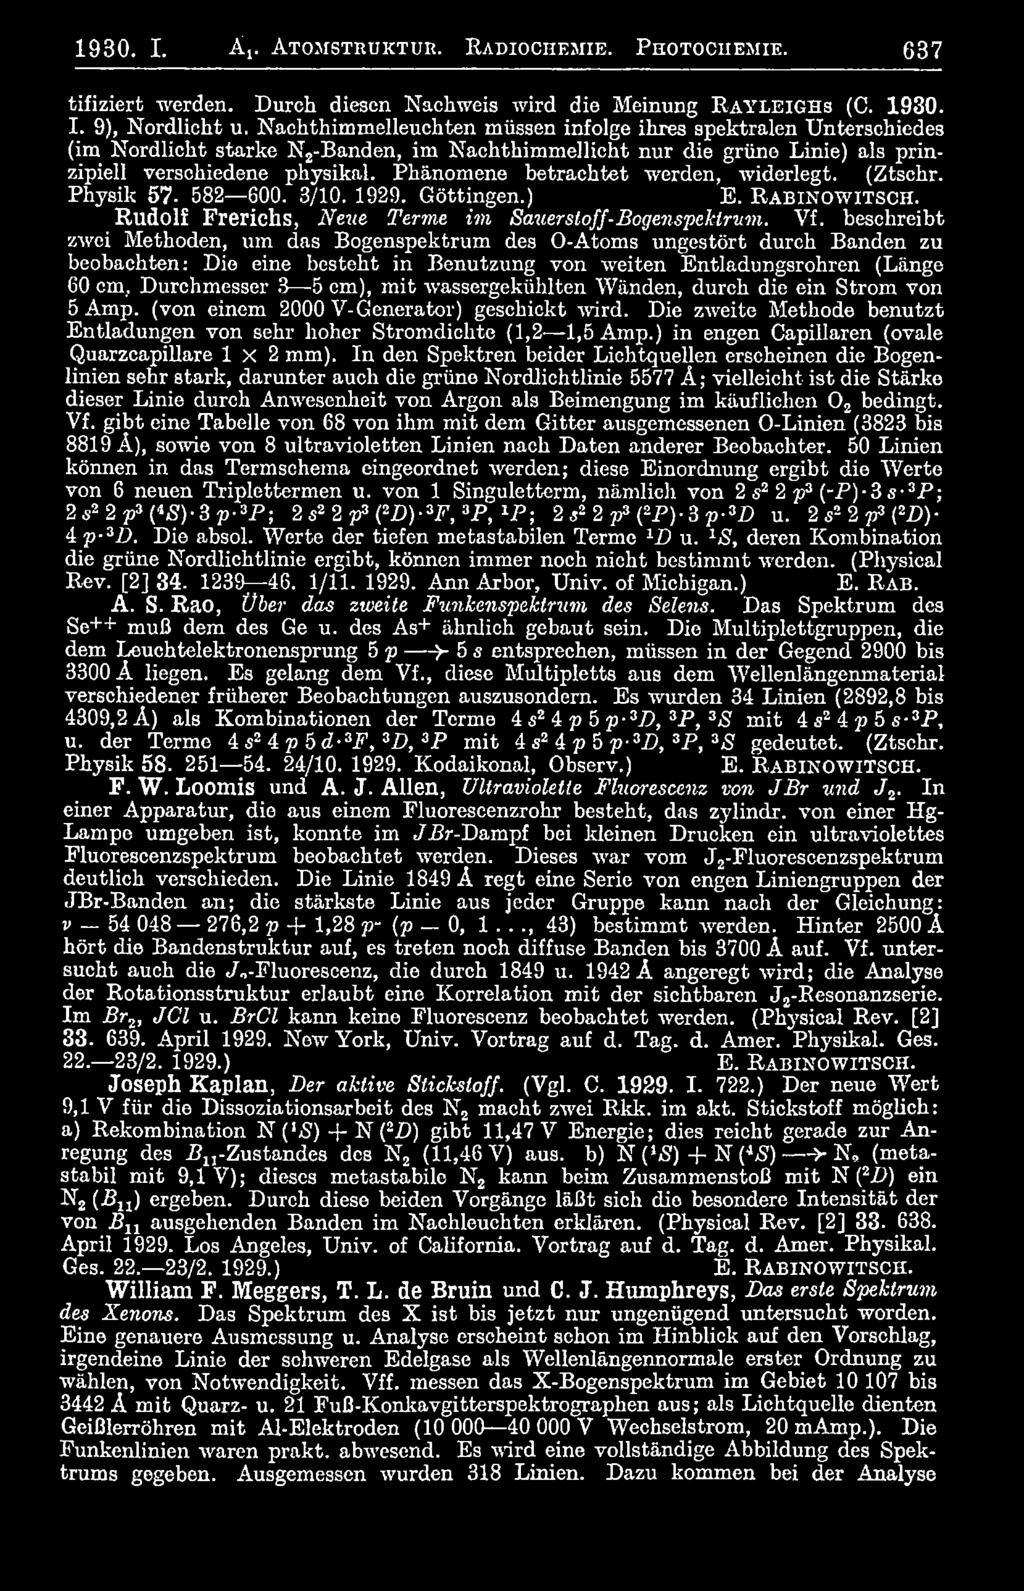 Phänomene betrachtet werden, widerlegt. (Ztschr. Physik 57. 582 600. 3/10. 1929. Göttingen.) E. R a b in o w it s c h. Rudolf Frerichs, Neue Tenne im Sauerstoff-Bogenspektrum. Vf.